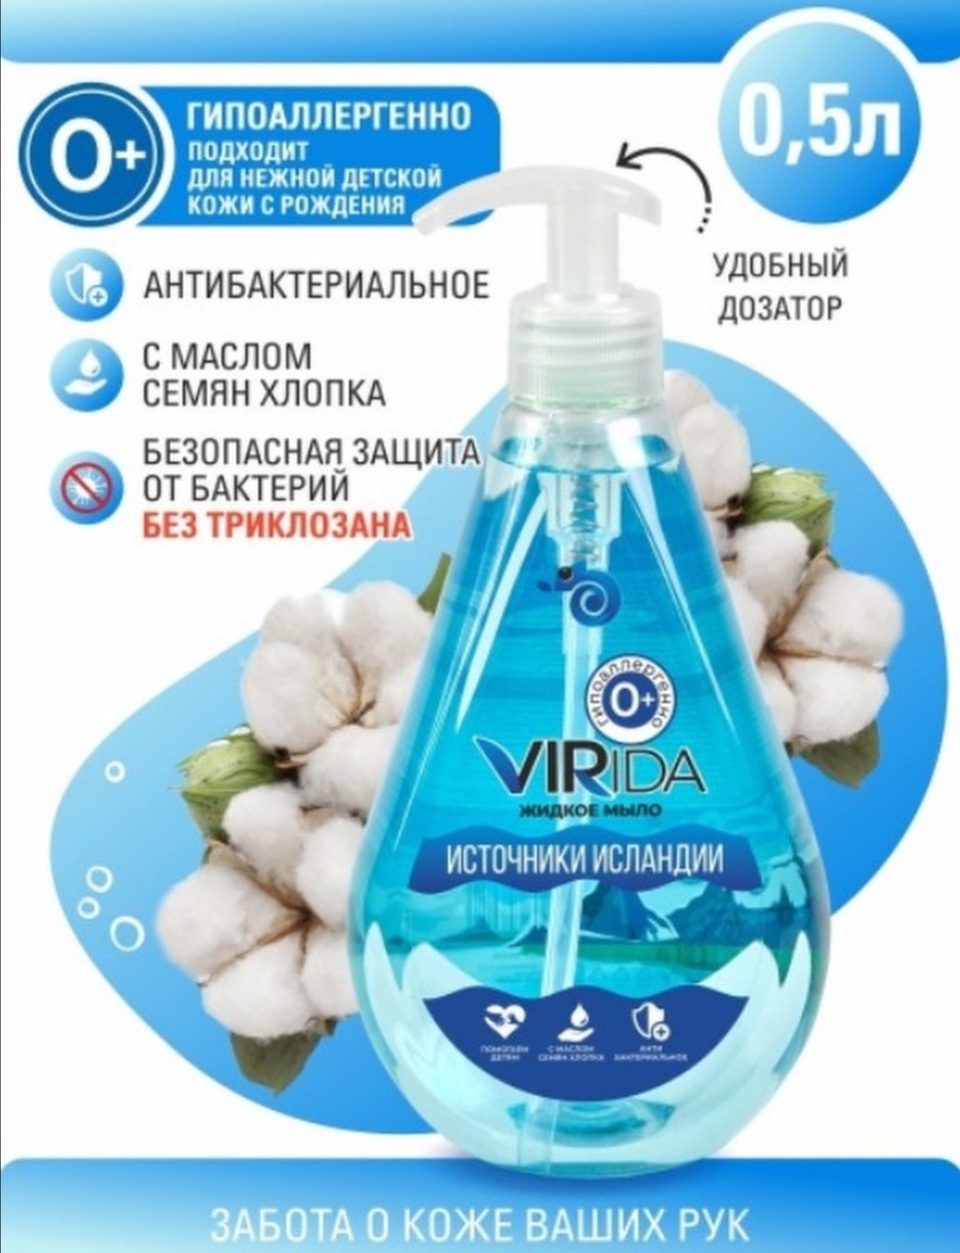 Virida жидкое мыло источники Исландии - 180 ₽, заказать онлайн.